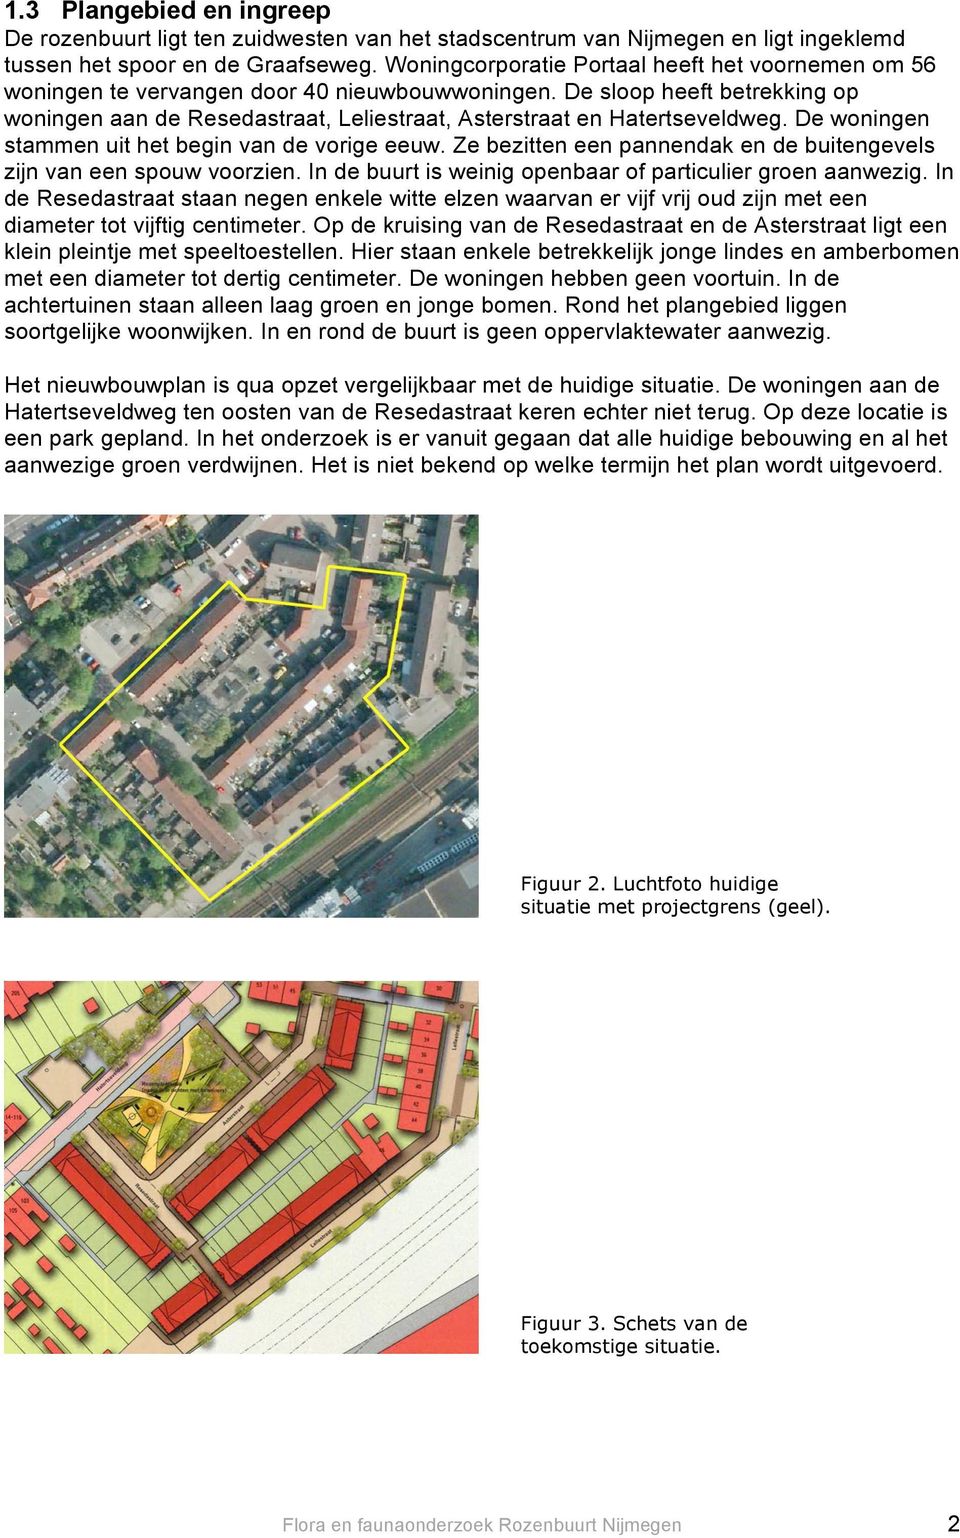 De sloop heeft betrekking op woningen aan de Resedastraat, Leliestraat, Asterstraat en Hatertseveldweg. De woningen stammen uit het begin van de vorige eeuw.